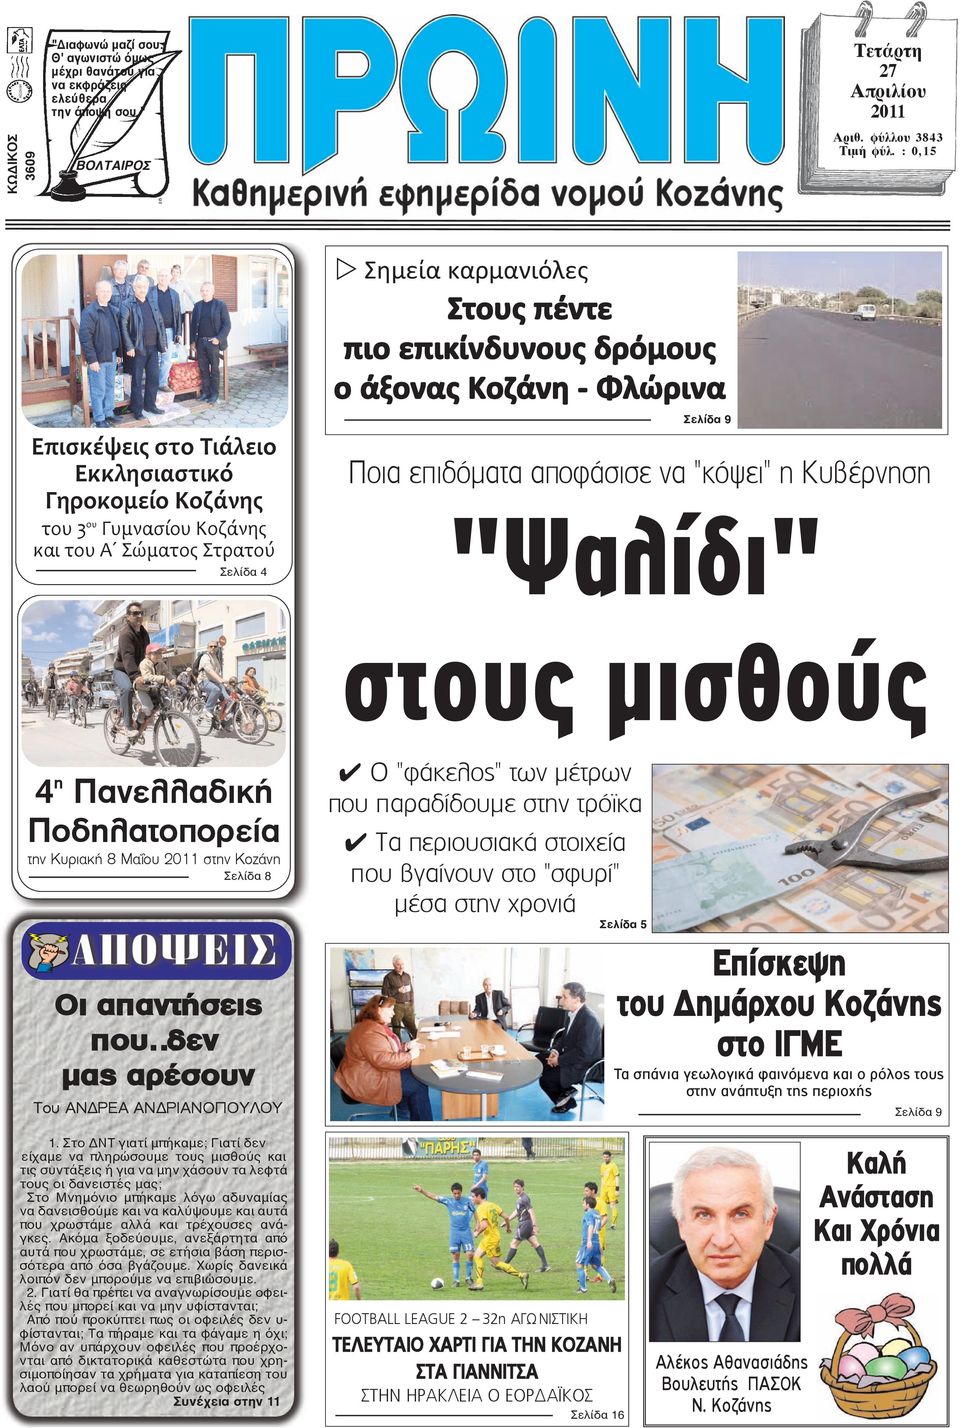 - Φλώρινα Σελίδα 9 Ποια επιδόματα αποφάσισε να "κόψει" η Κυβέρνηση "Ψαλίδι" στους µισθούς 4 η Πανελλαδική Ποδηλατοπορεία την Κυριακή 8 Μαΐου 2011 στην Κοζάνη Σελίδα 8 Οι απαντήσεις που δεν μας